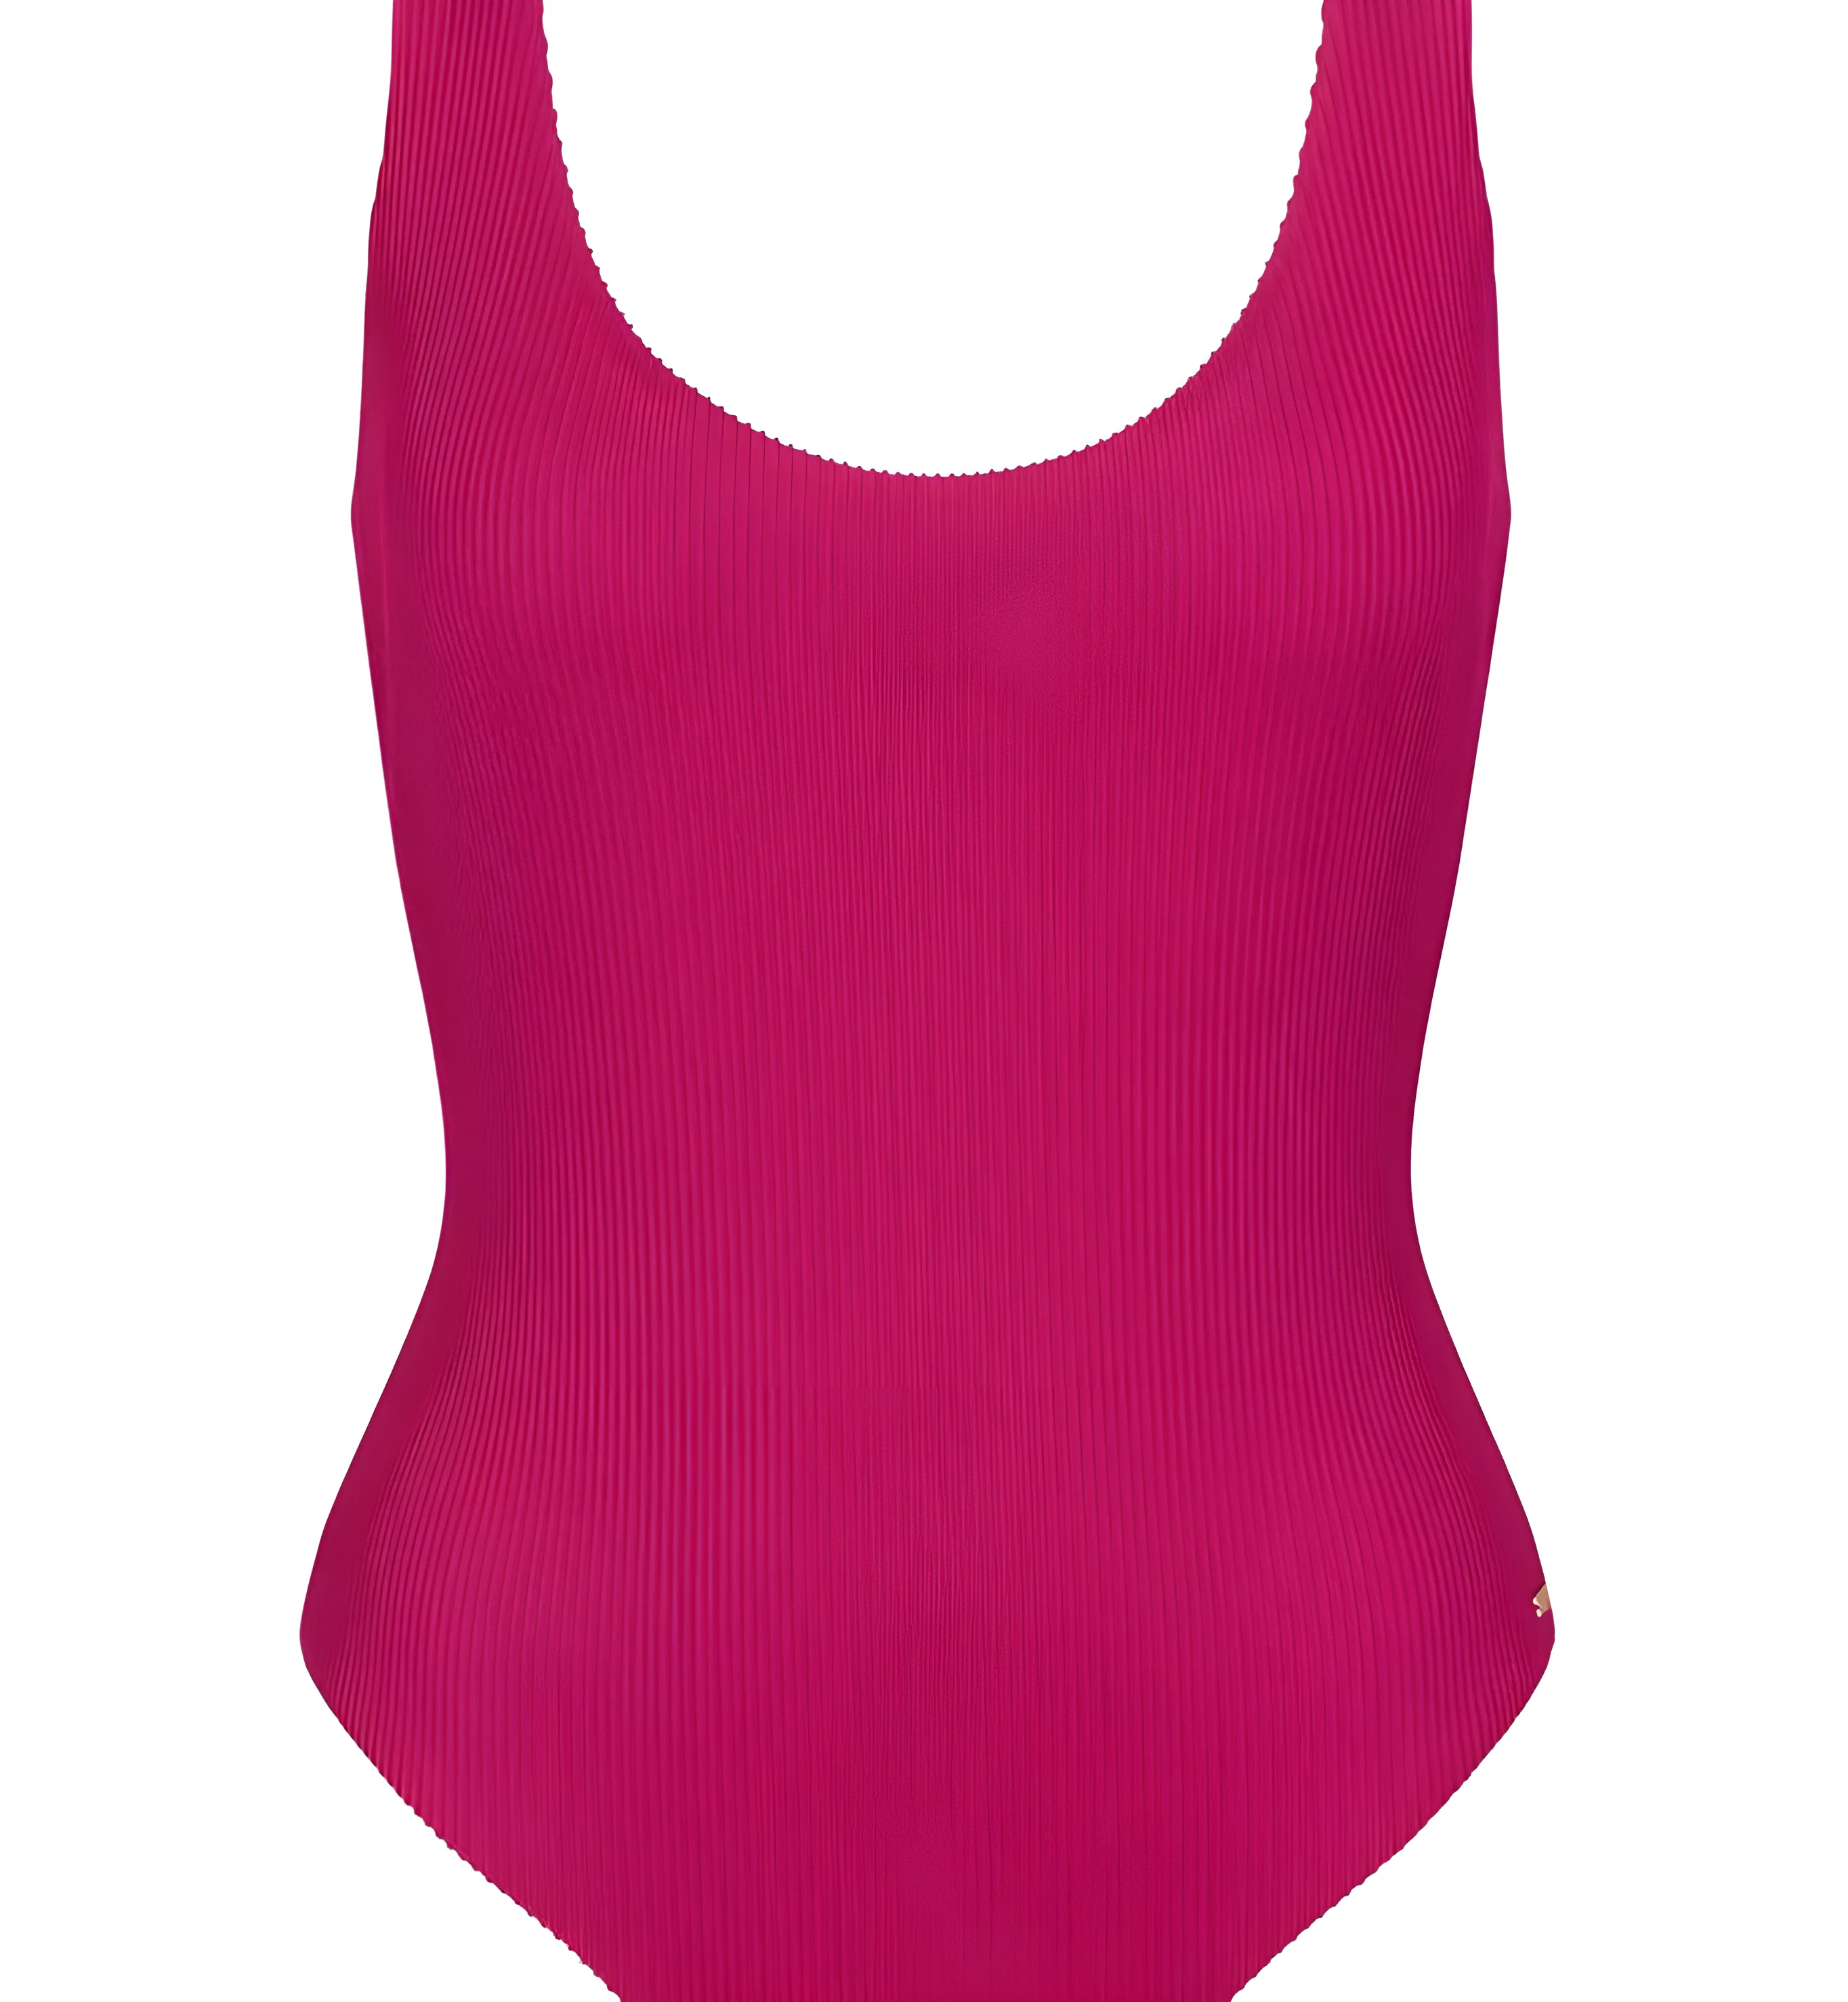 Dámské jednodílné plavky swim Pink Summer Tai 02 M019 - Sloggi světlá kombinace růžové (M019) 0042